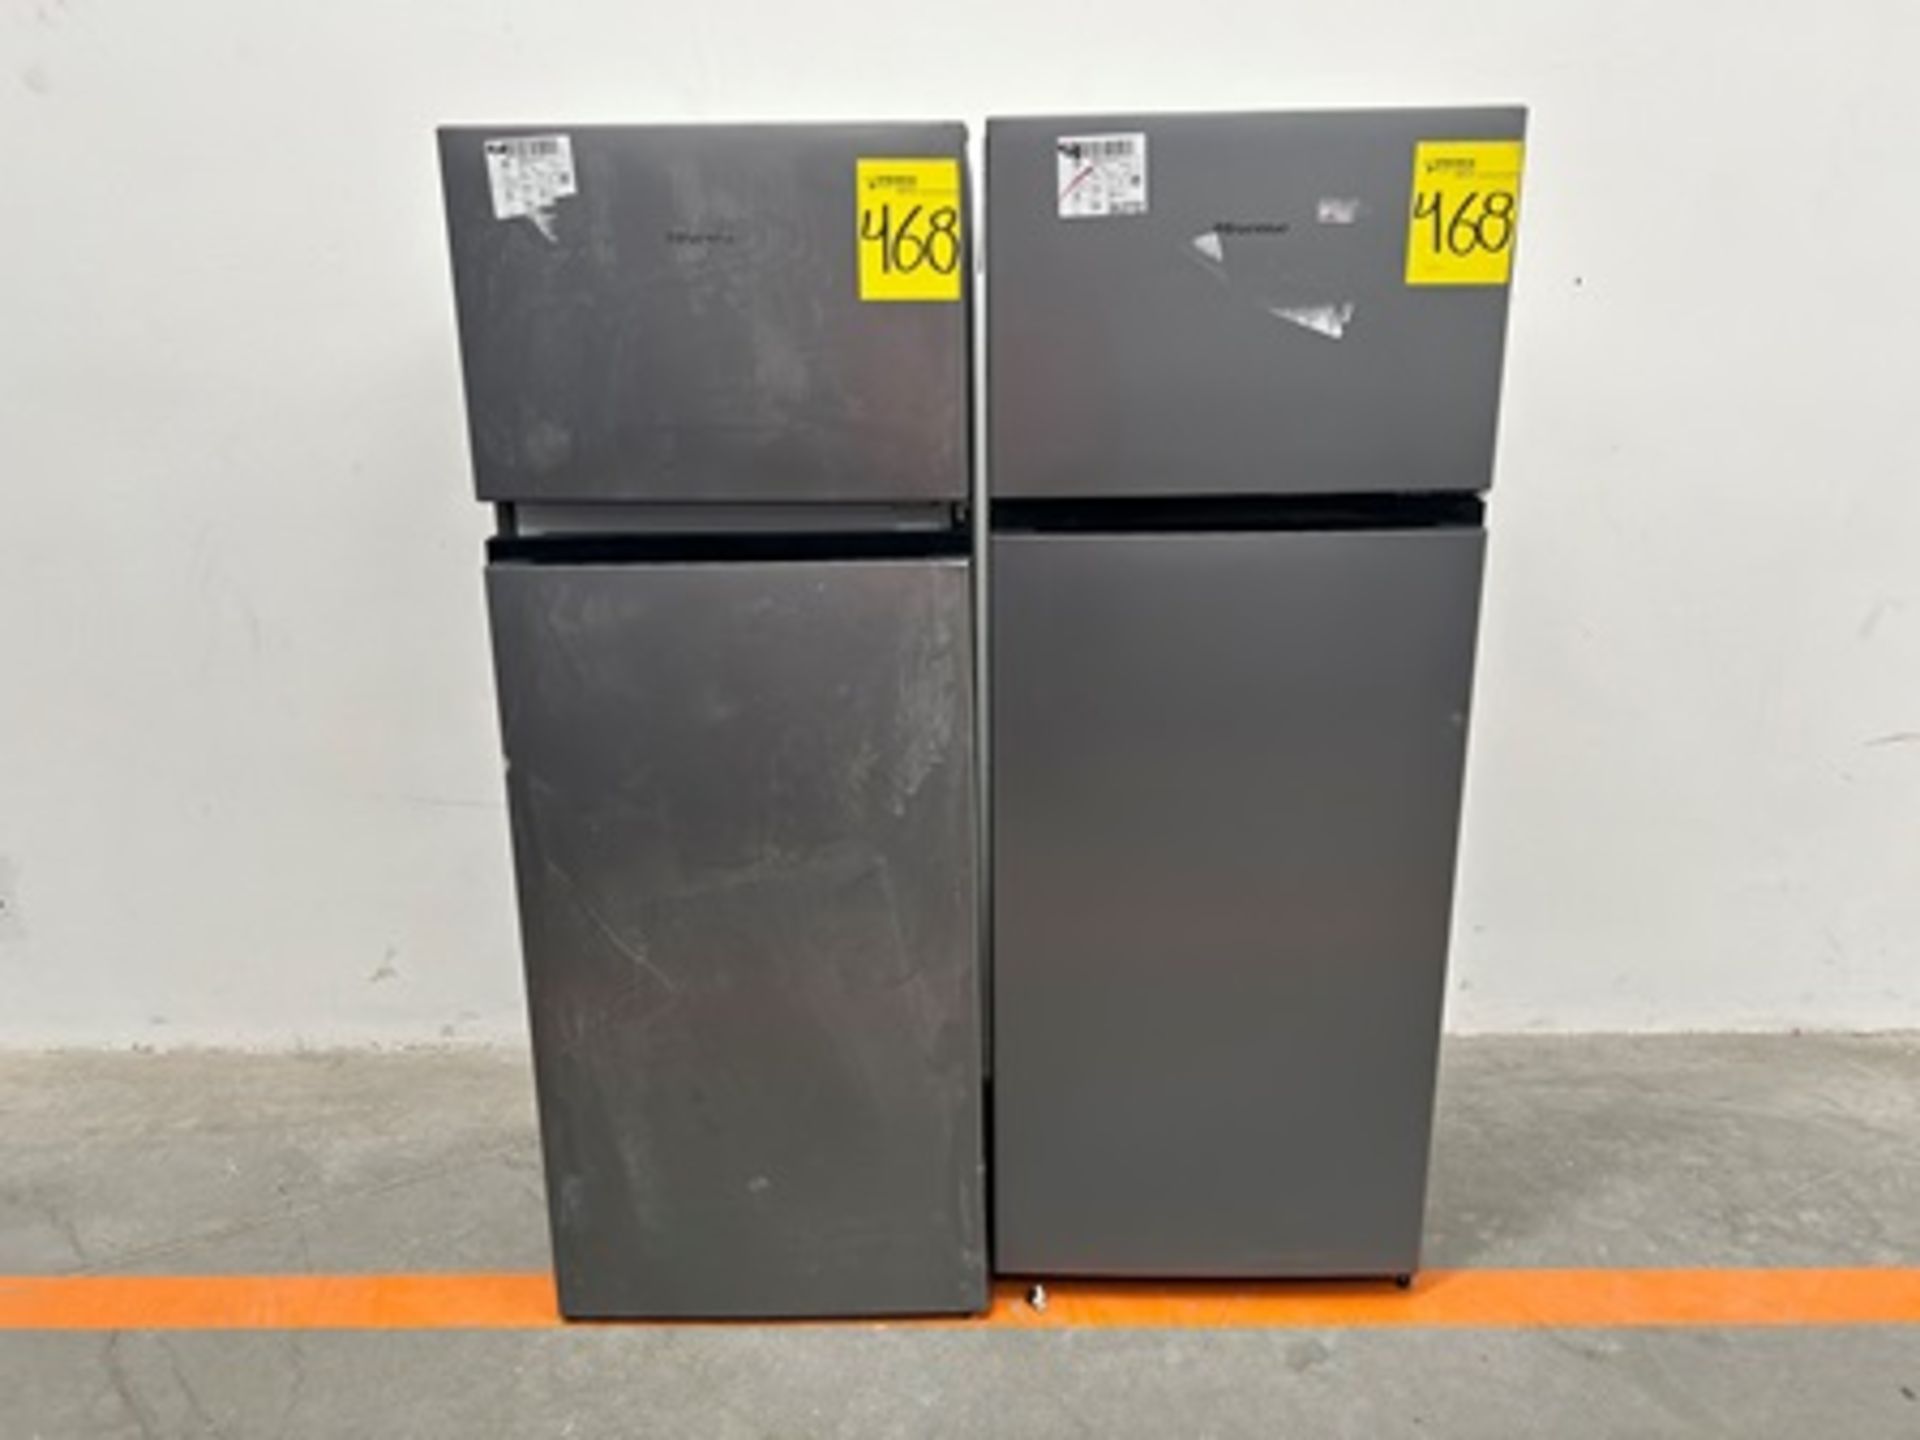 Lote de 2 refrigeradores contiene: 1 refrigerador Marca HISENSE, Modelo RT80D6AGX, Serie P20091, Co